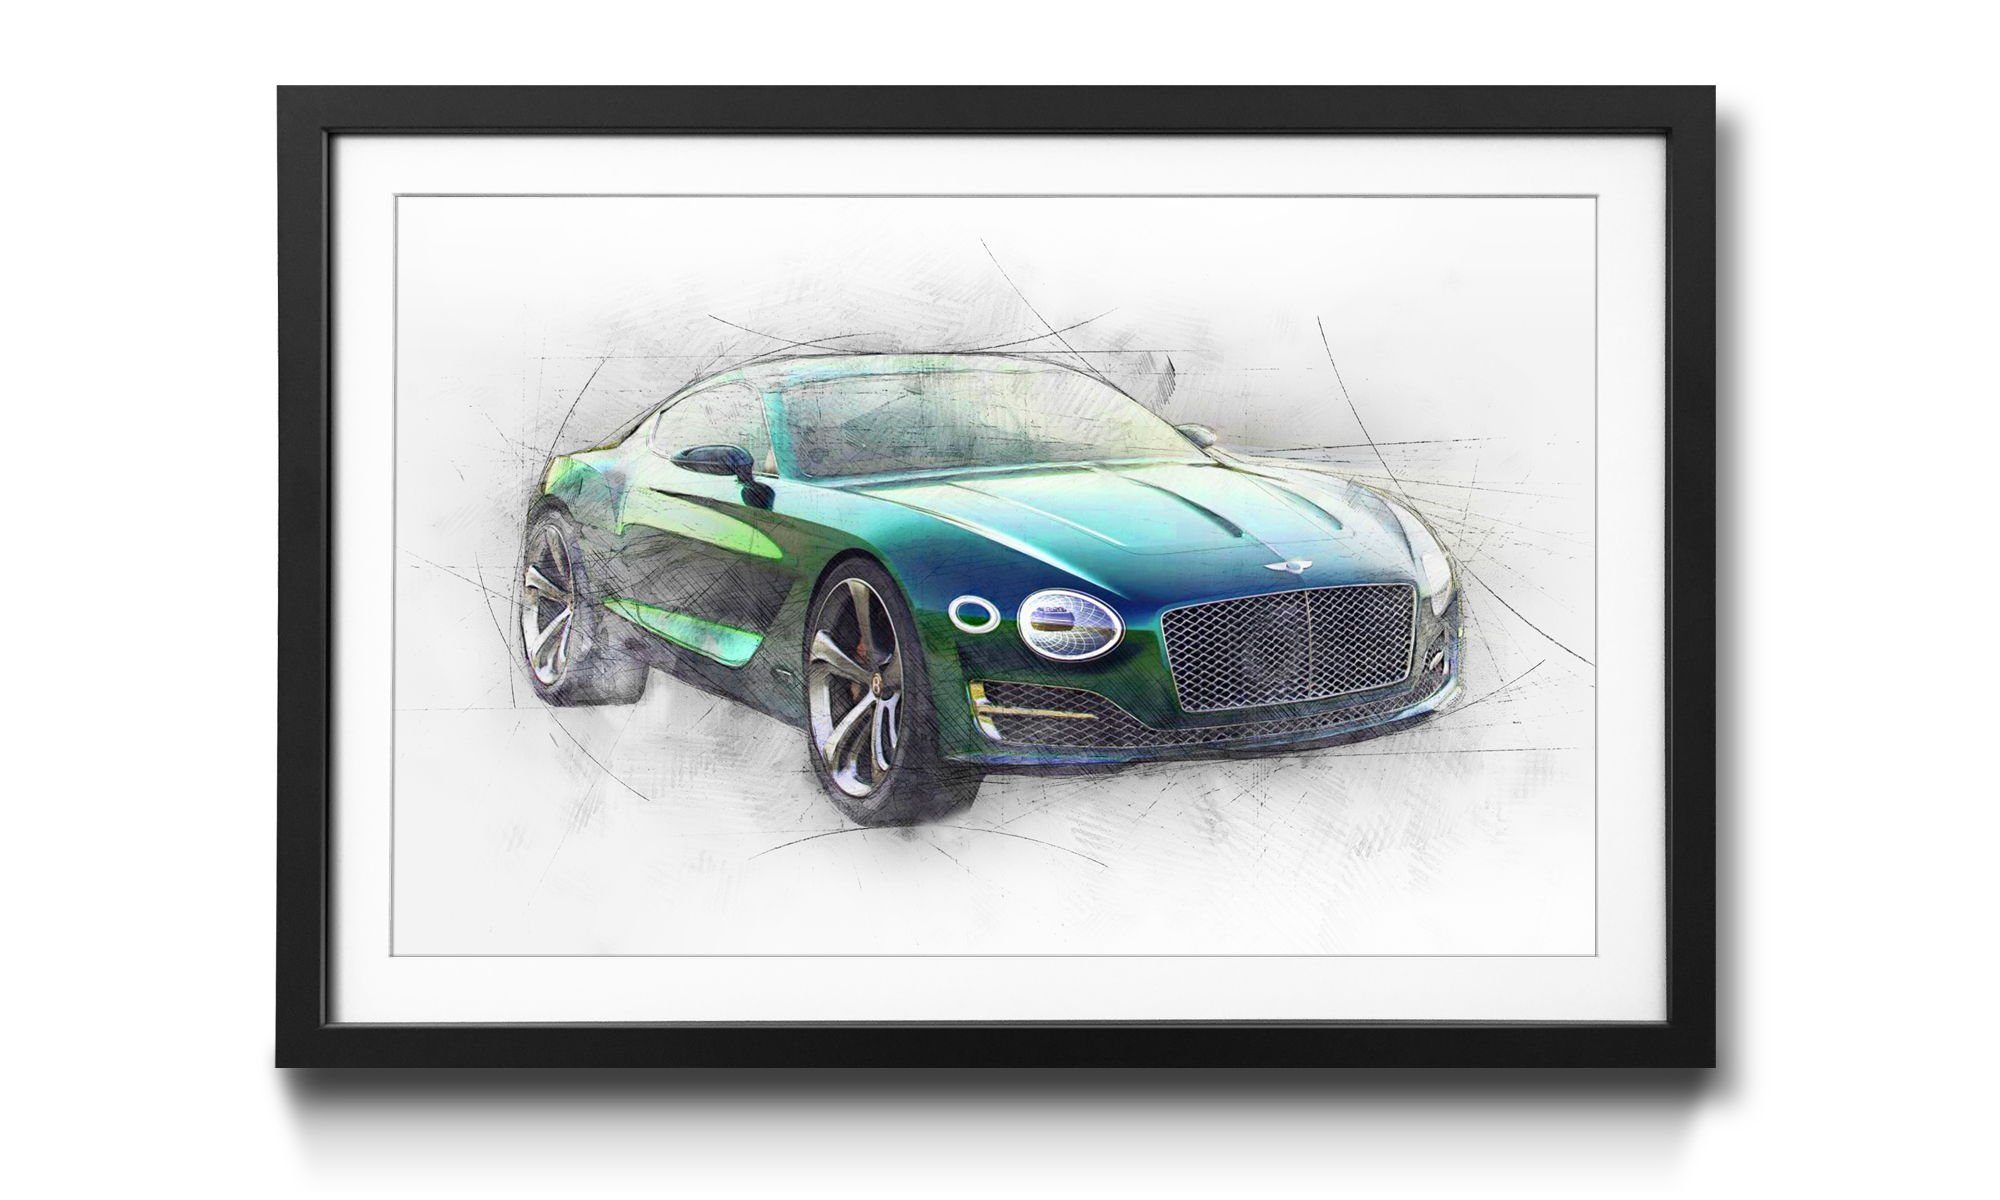 WandbilderXXL Bild mit Auto, in Queen, Green Wandbild, 4 Rahmen Größen erhältlich